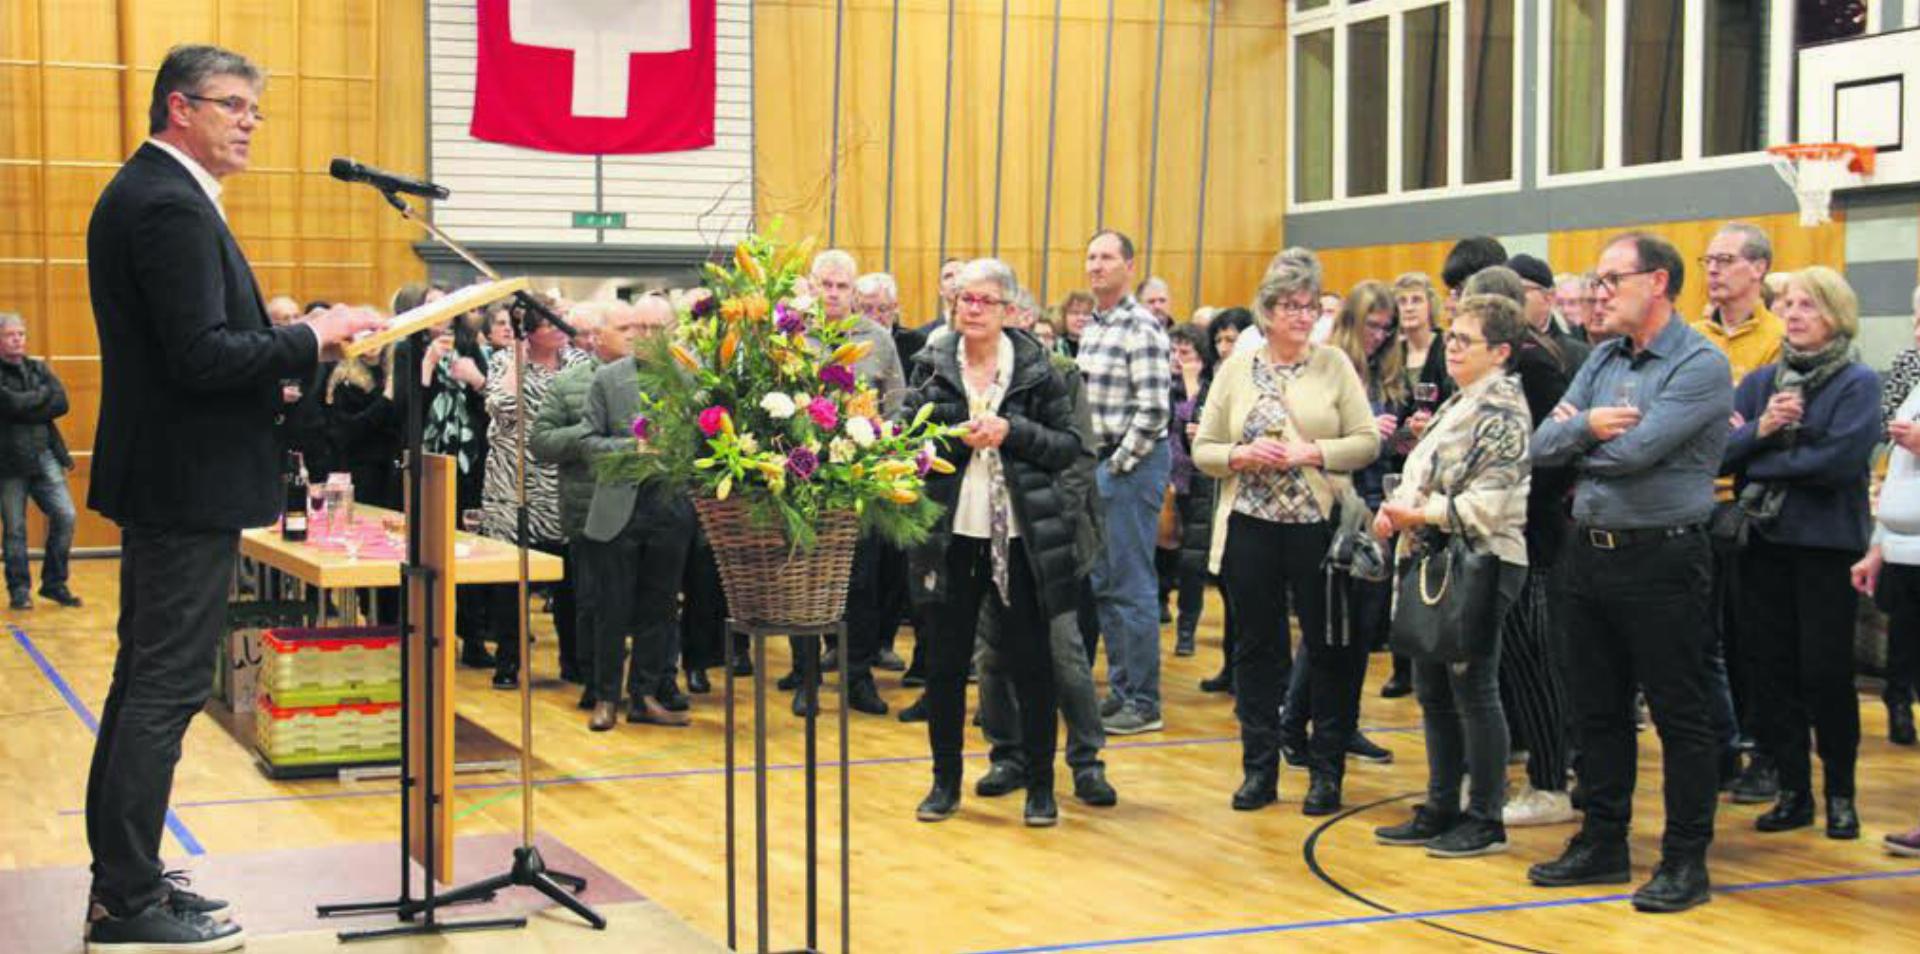 Gemeindeammann Ueli Lütolf hielt eine Kurzansprache vor grossem Publikum. Bild: mo